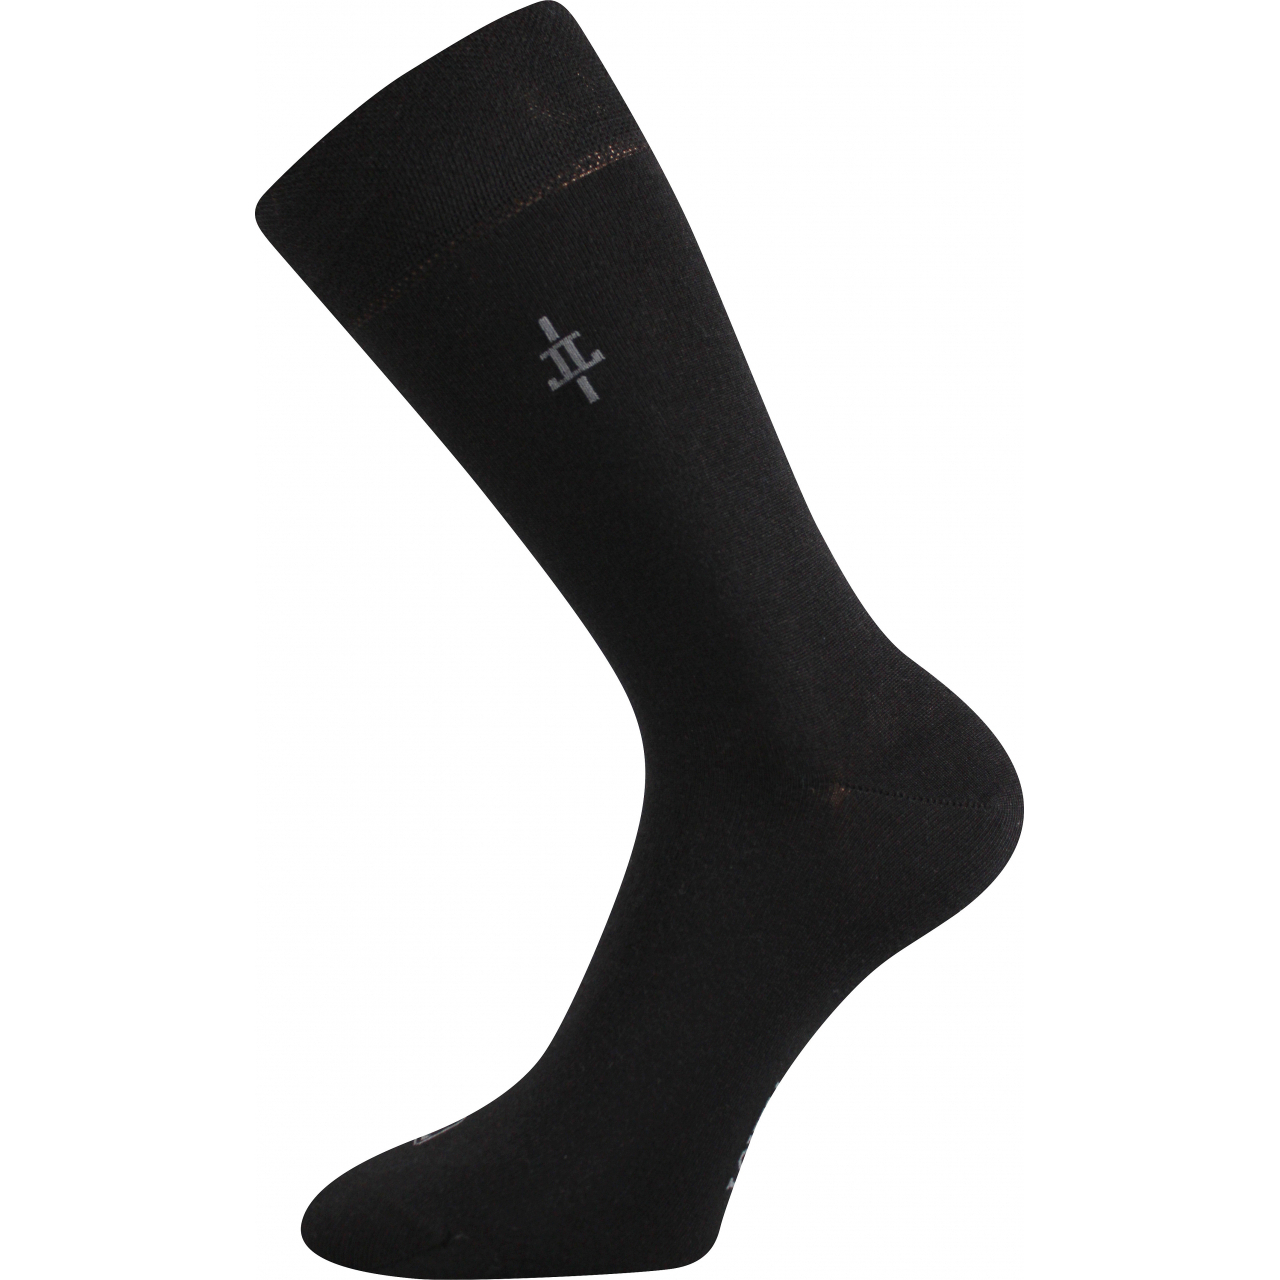 Ponožky pánské společenské Lonka Mopak - černé, 39-42